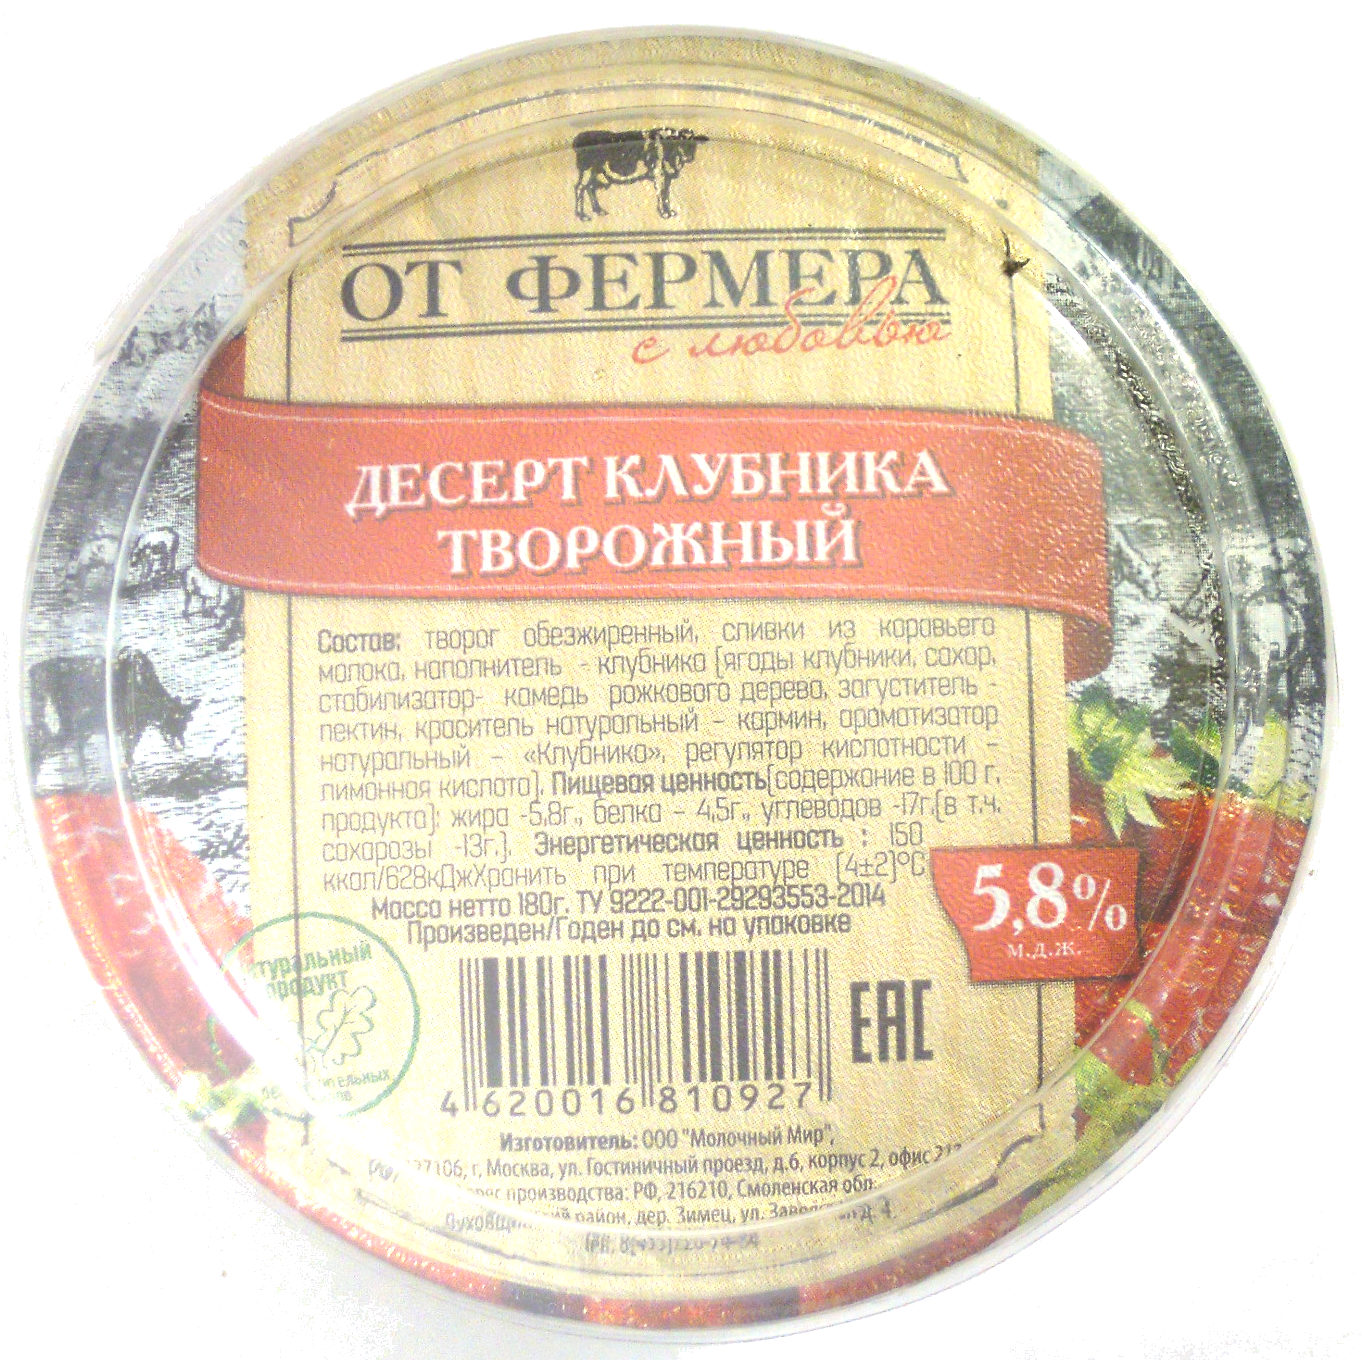 Десерт клубника творожный 5,8 % - Product - ru